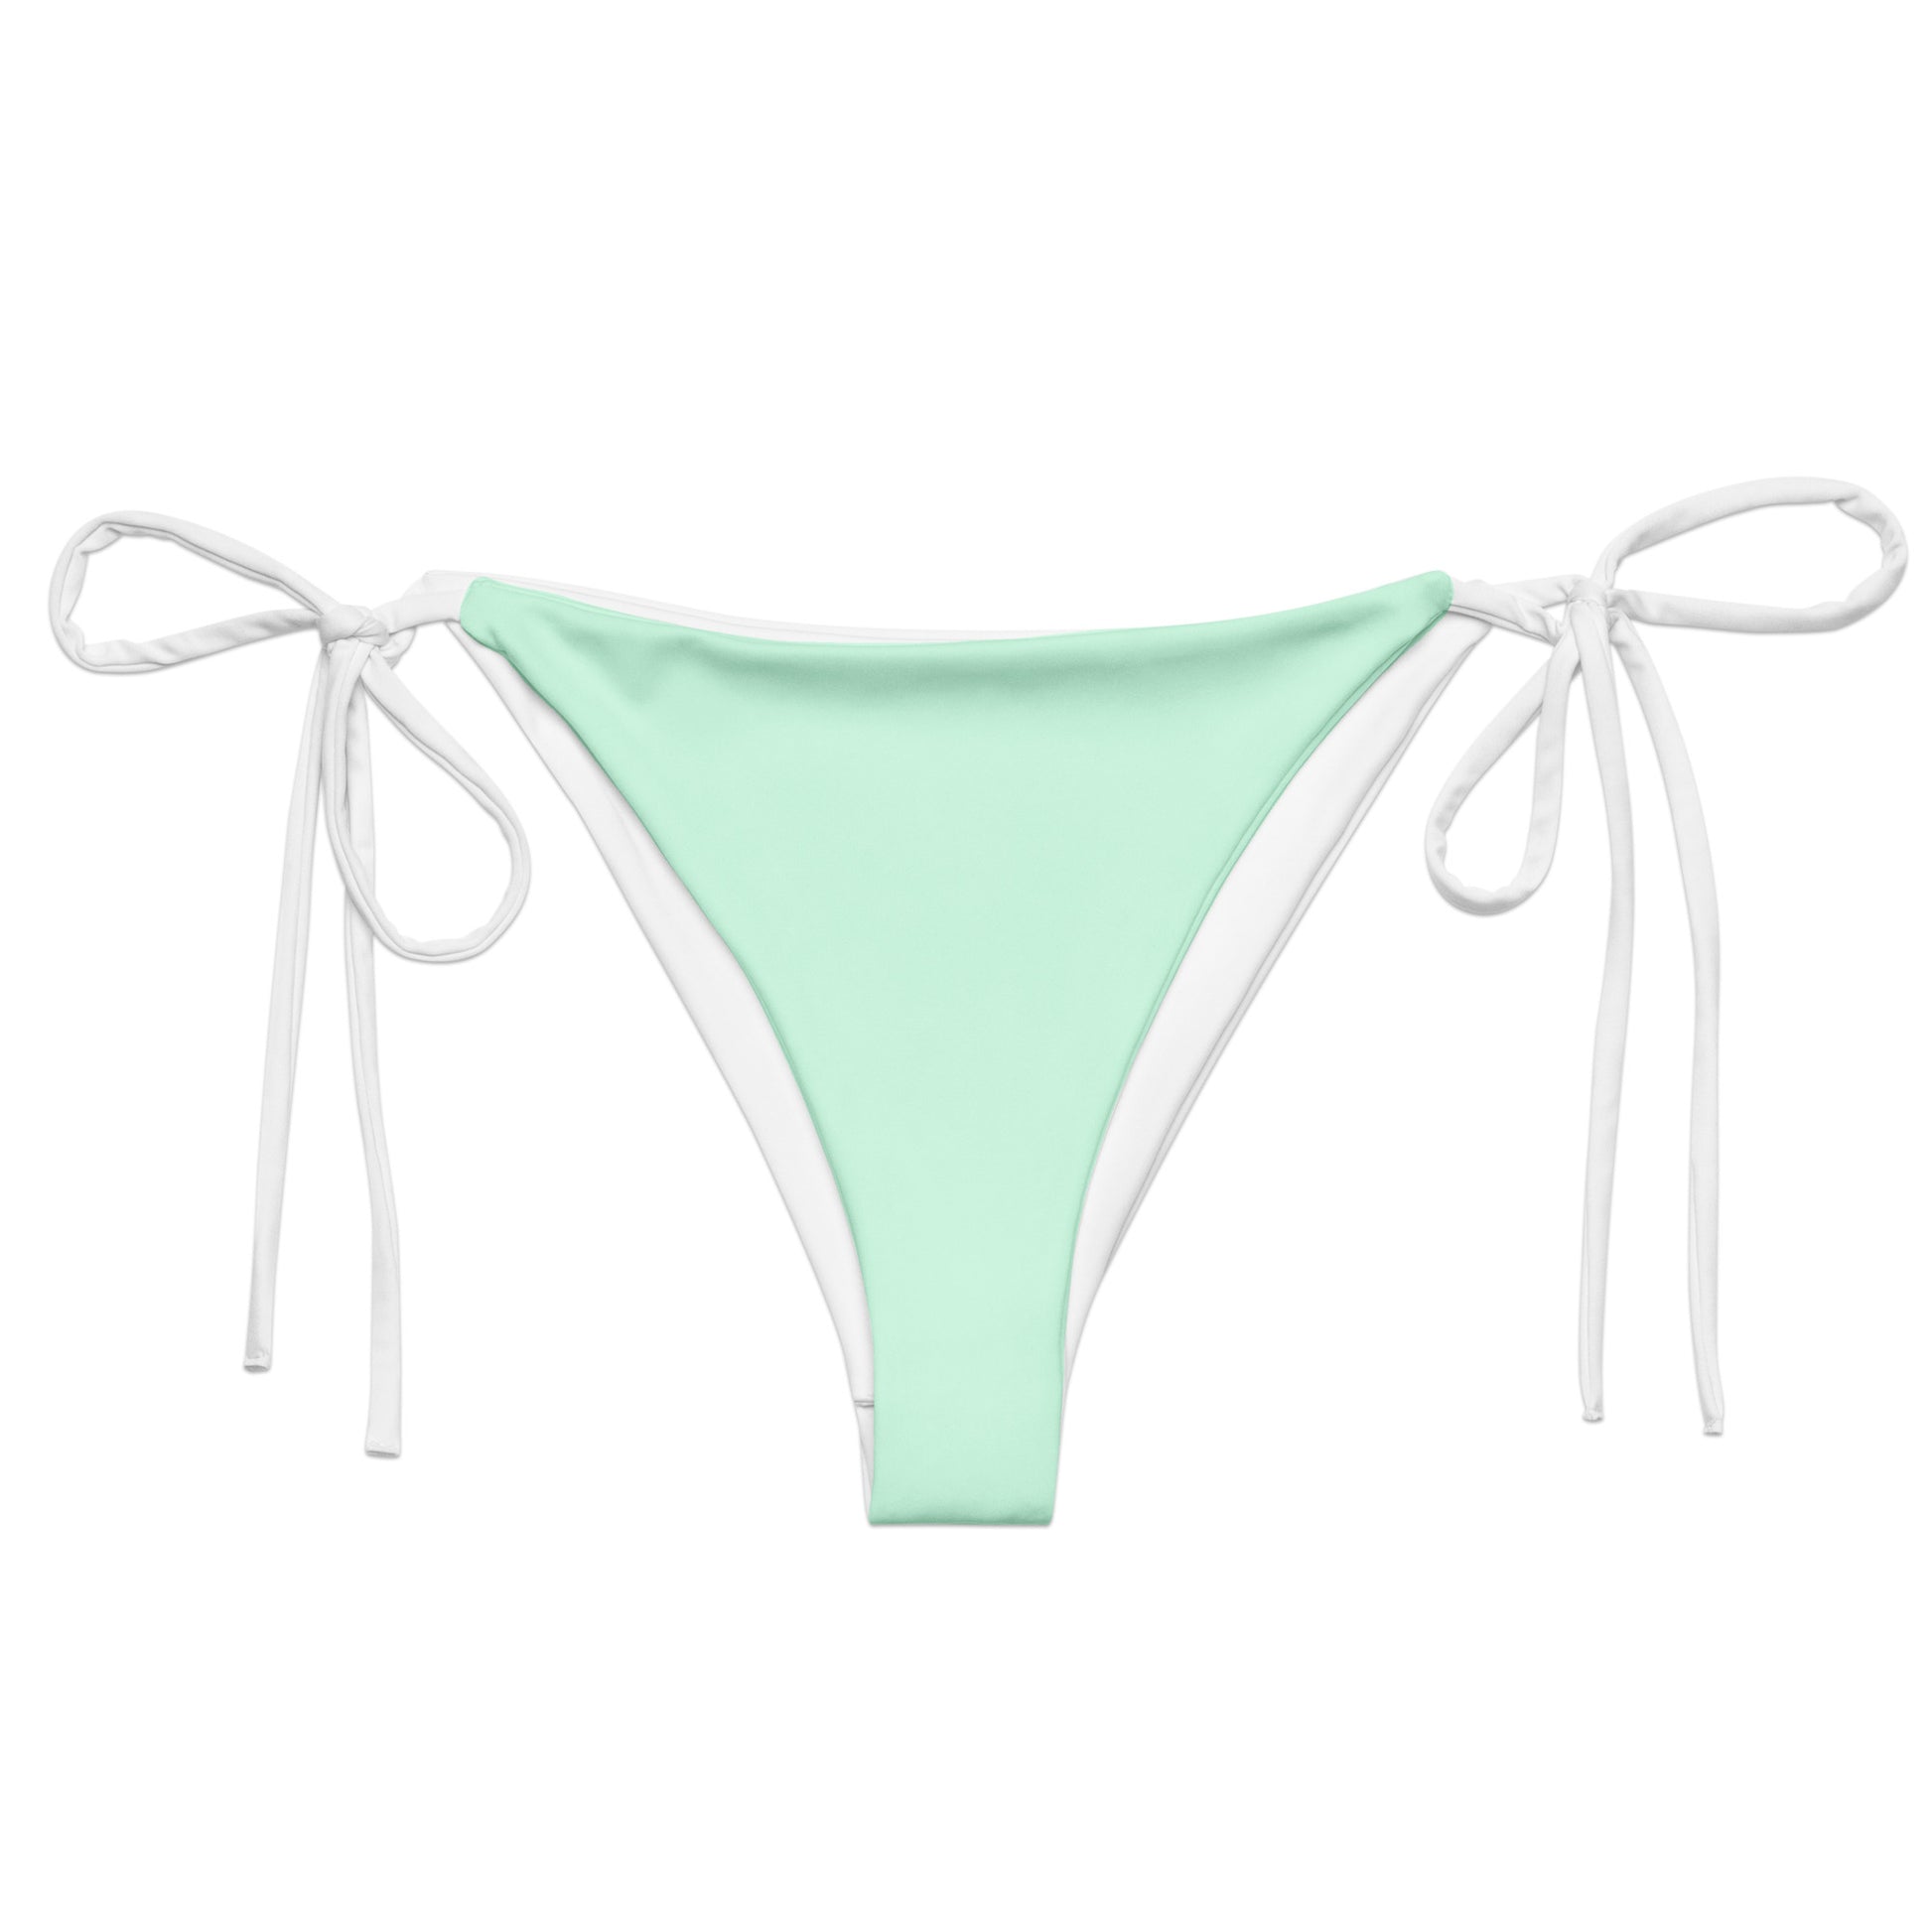 String Bikini Bottom | Pastel Mint by aisoi Swimwear & Beachwear 